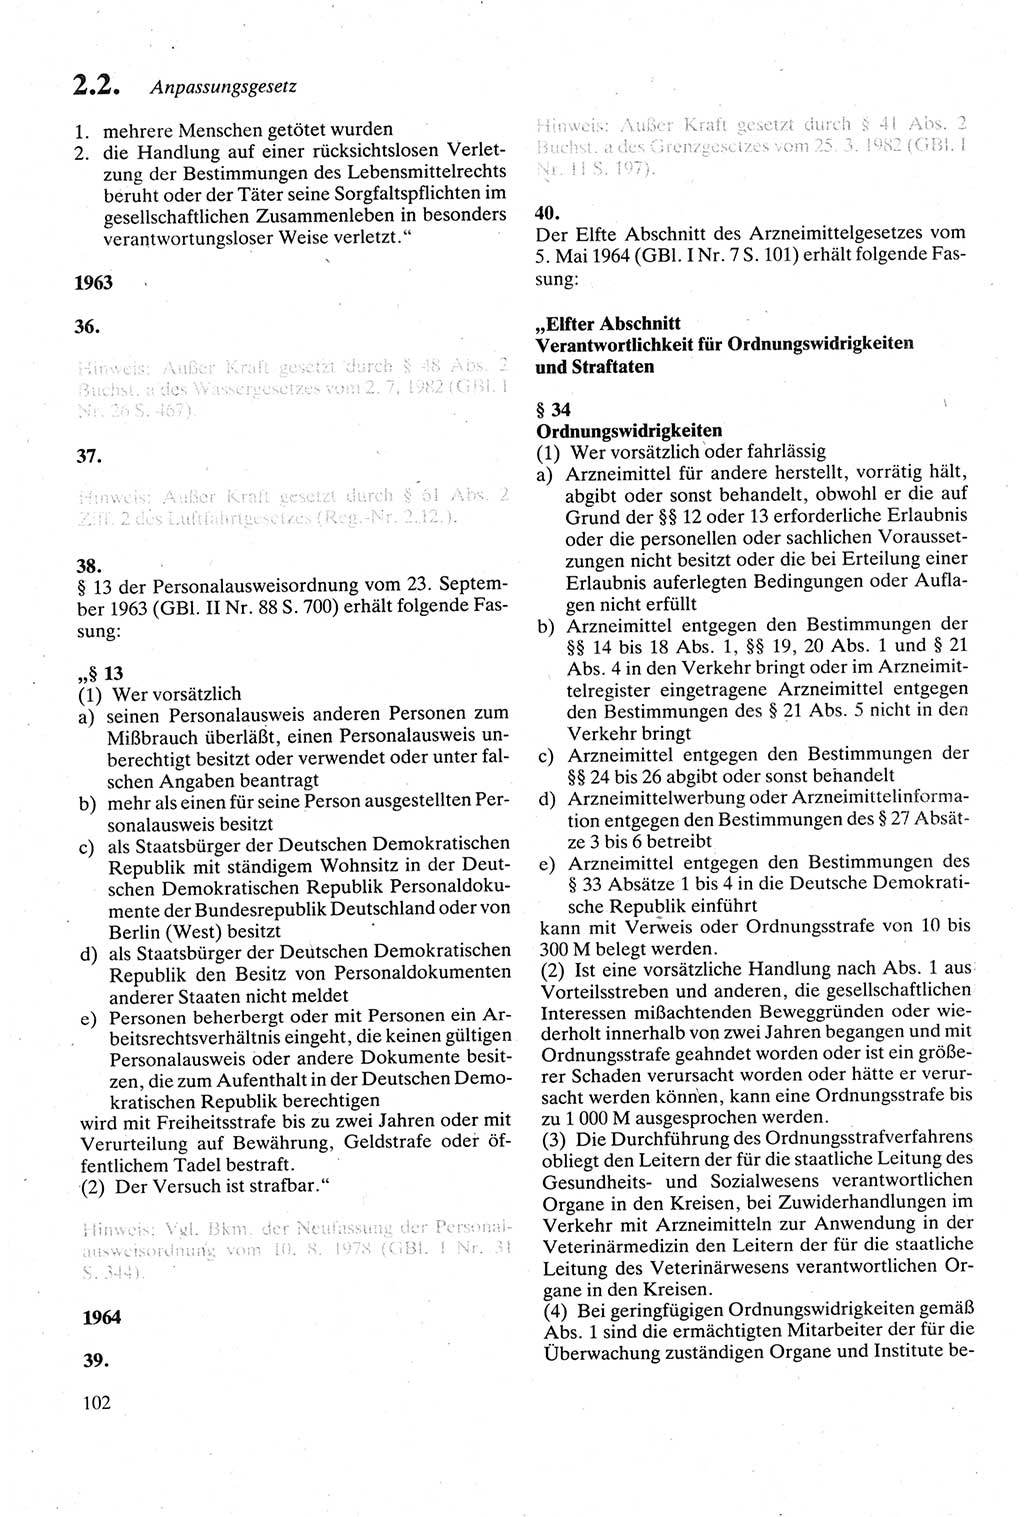 Strafgesetzbuch (StGB) der Deutschen Demokratischen Republik (DDR) sowie angrenzende Gesetze und Bestimmungen 1979, Seite 102 (StGB DDR Ges. Best. 1979, S. 102)